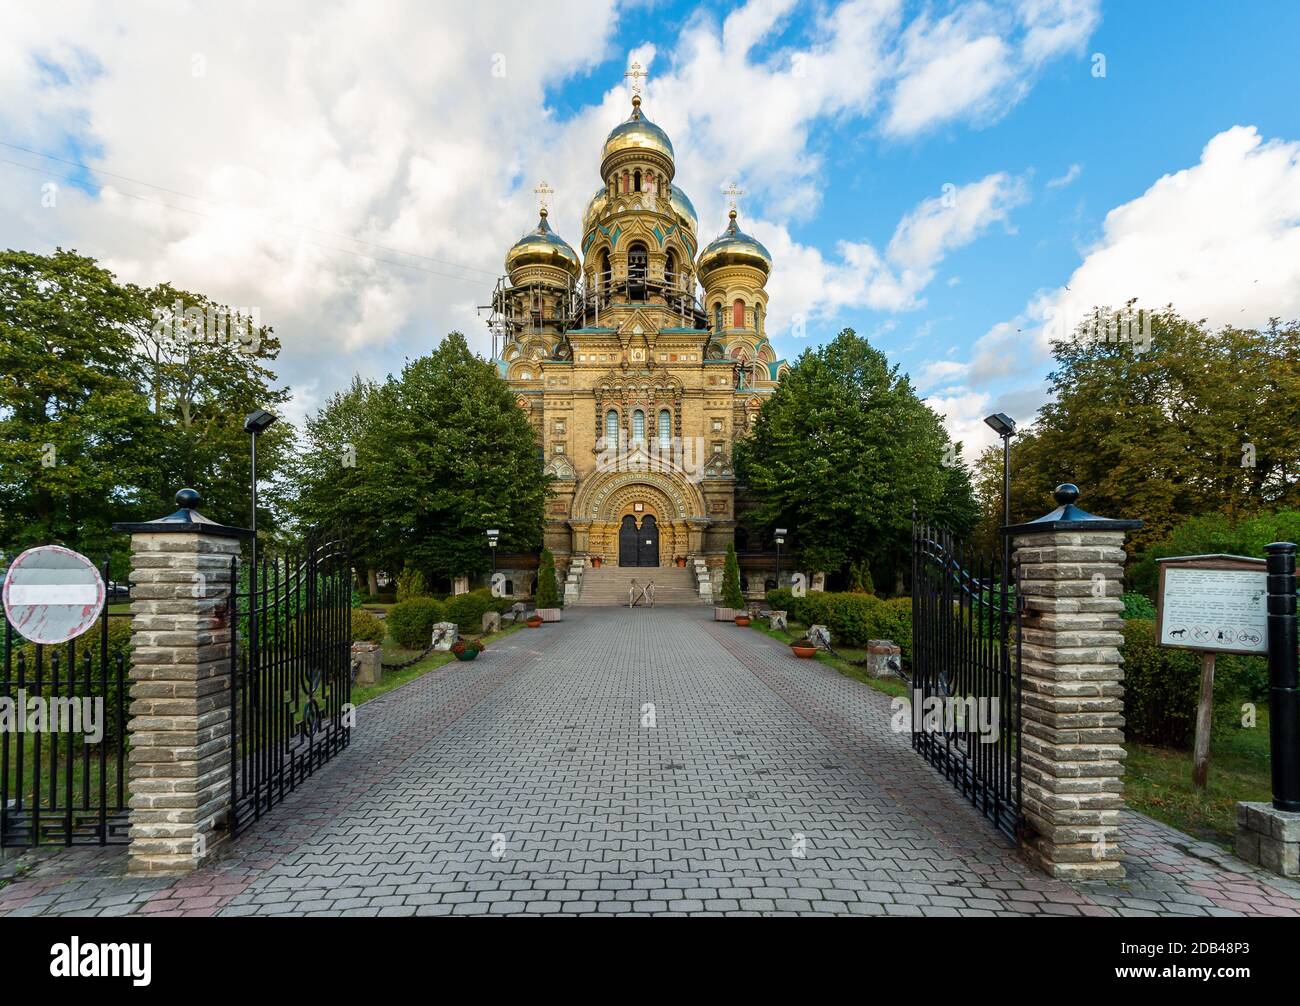 Cathédrale orthodoxe de plein air à Liepaja, Lettonie. 2019 Karaosta Travel photo. Banque D'Images